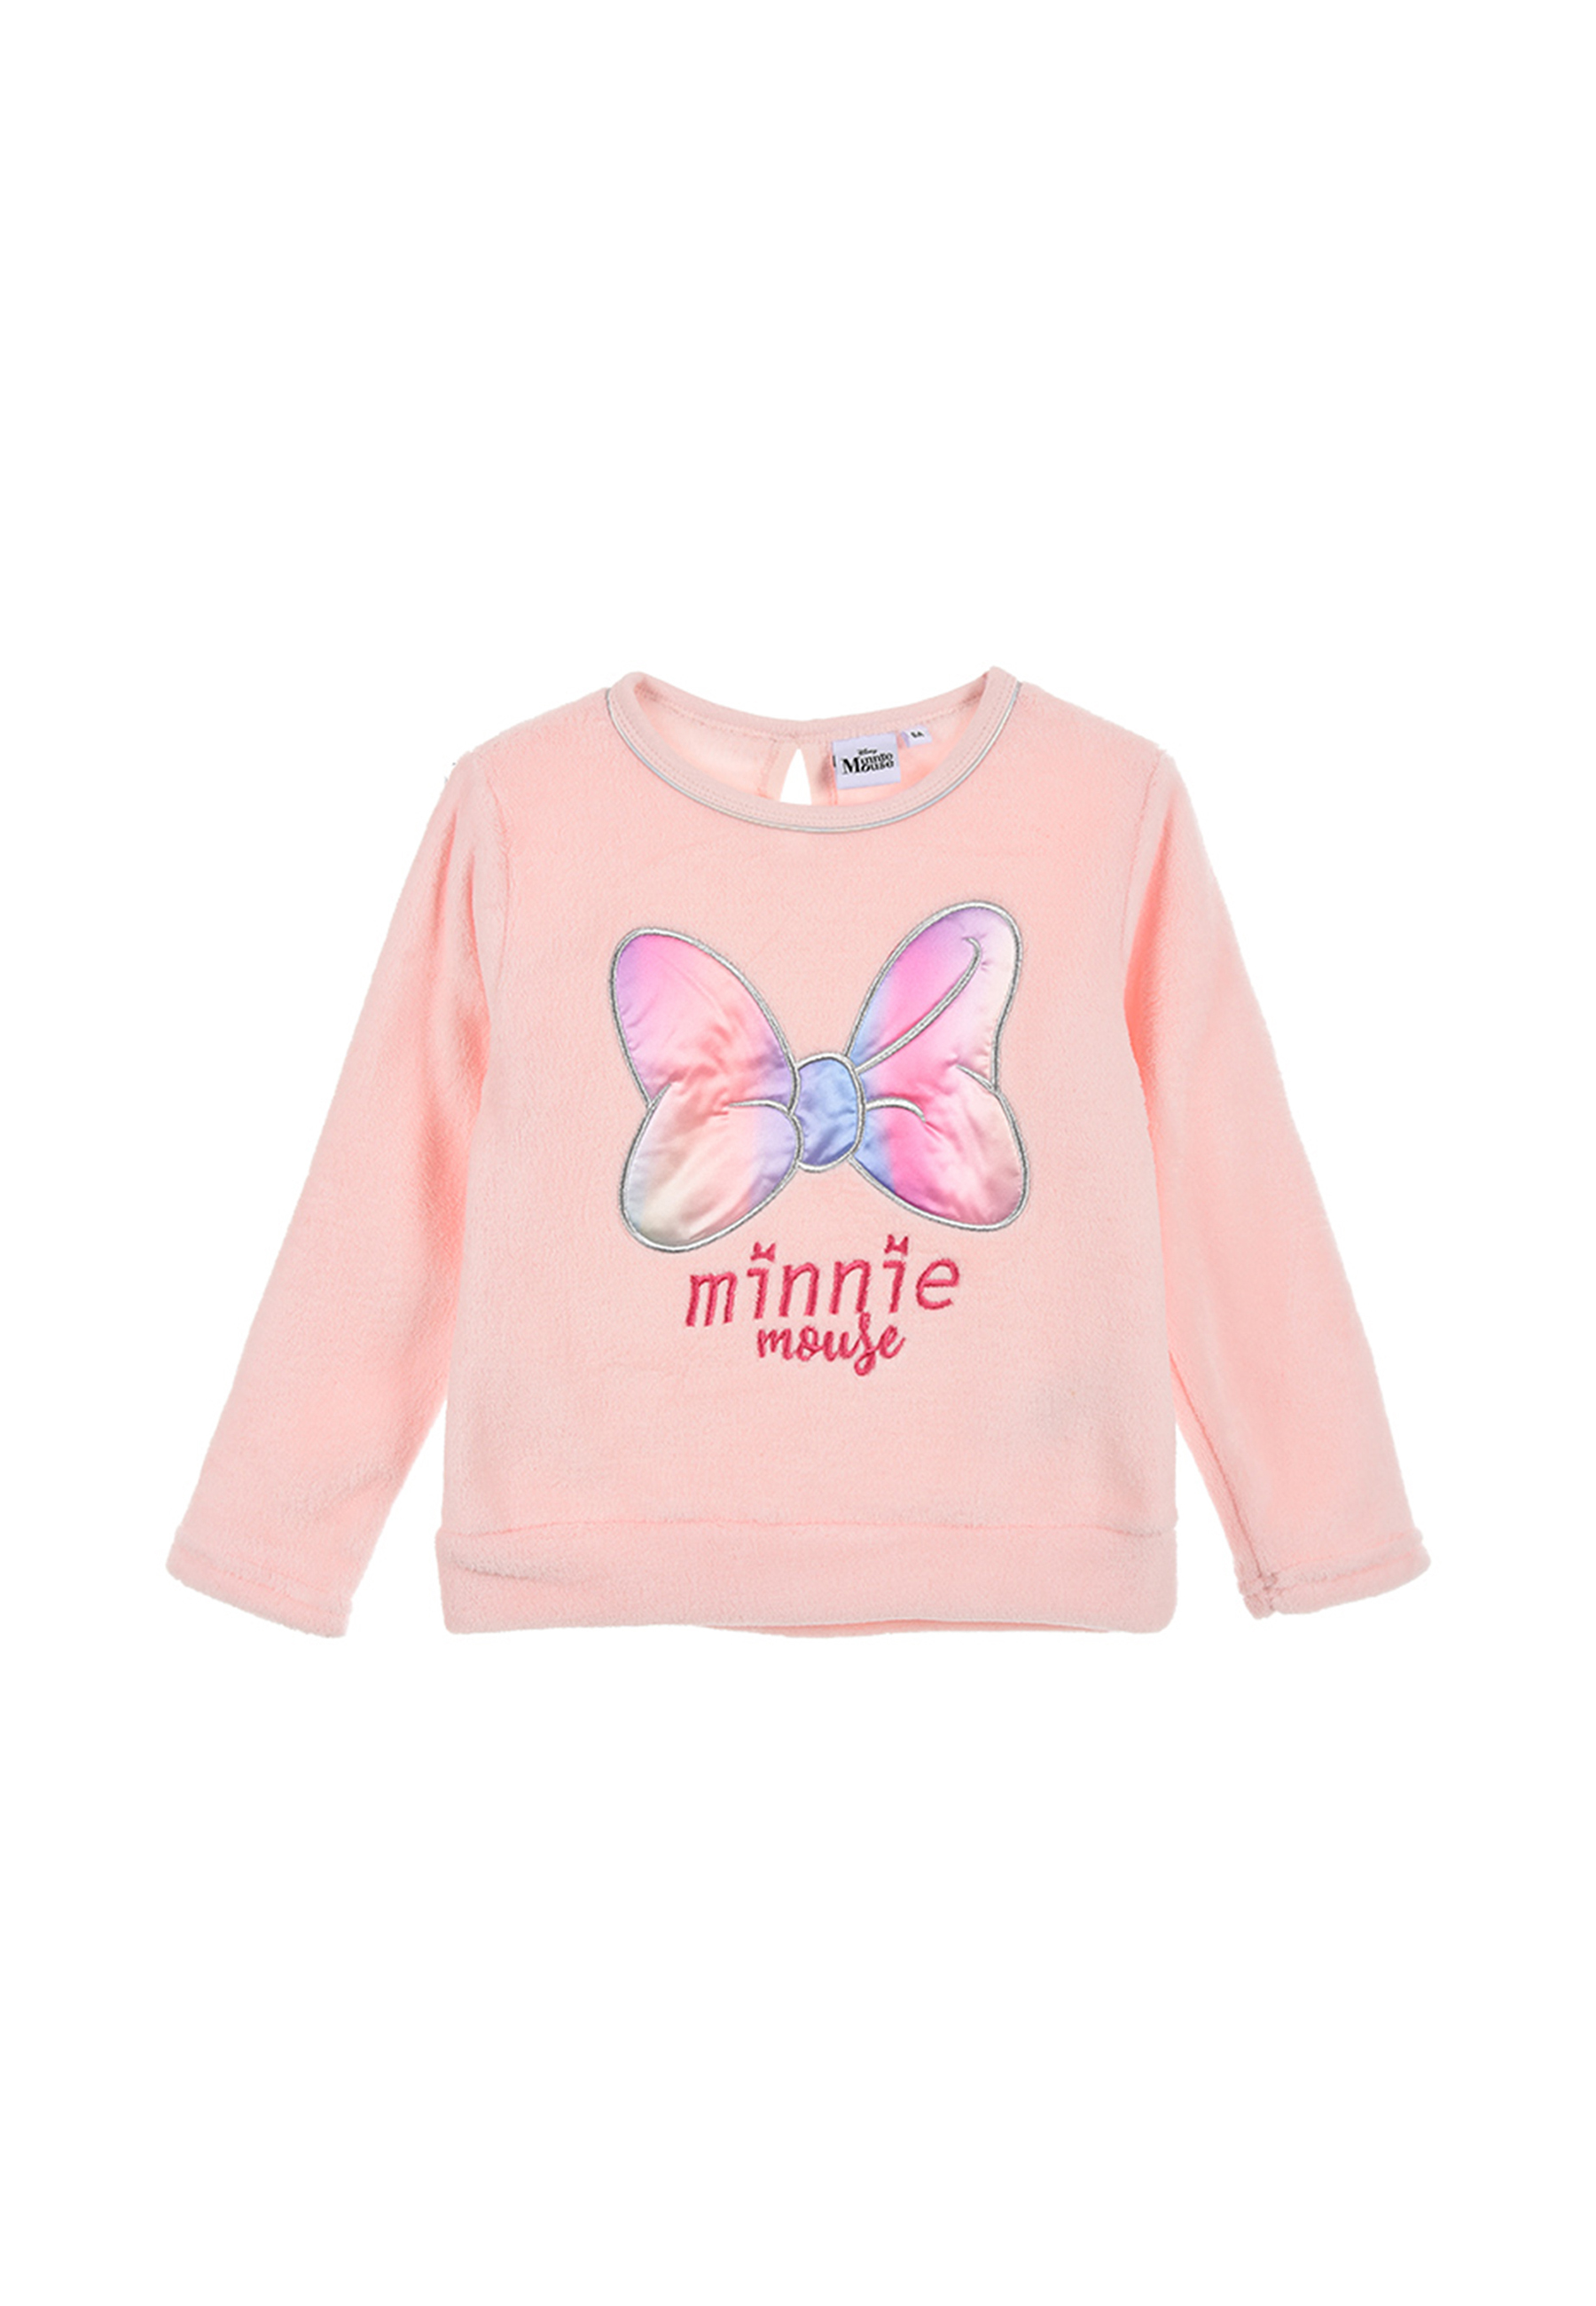 Пуловер Disney Minnie Mouse Sweatshirt, розовый рюкзак для малышей с поводьями minnie розовый